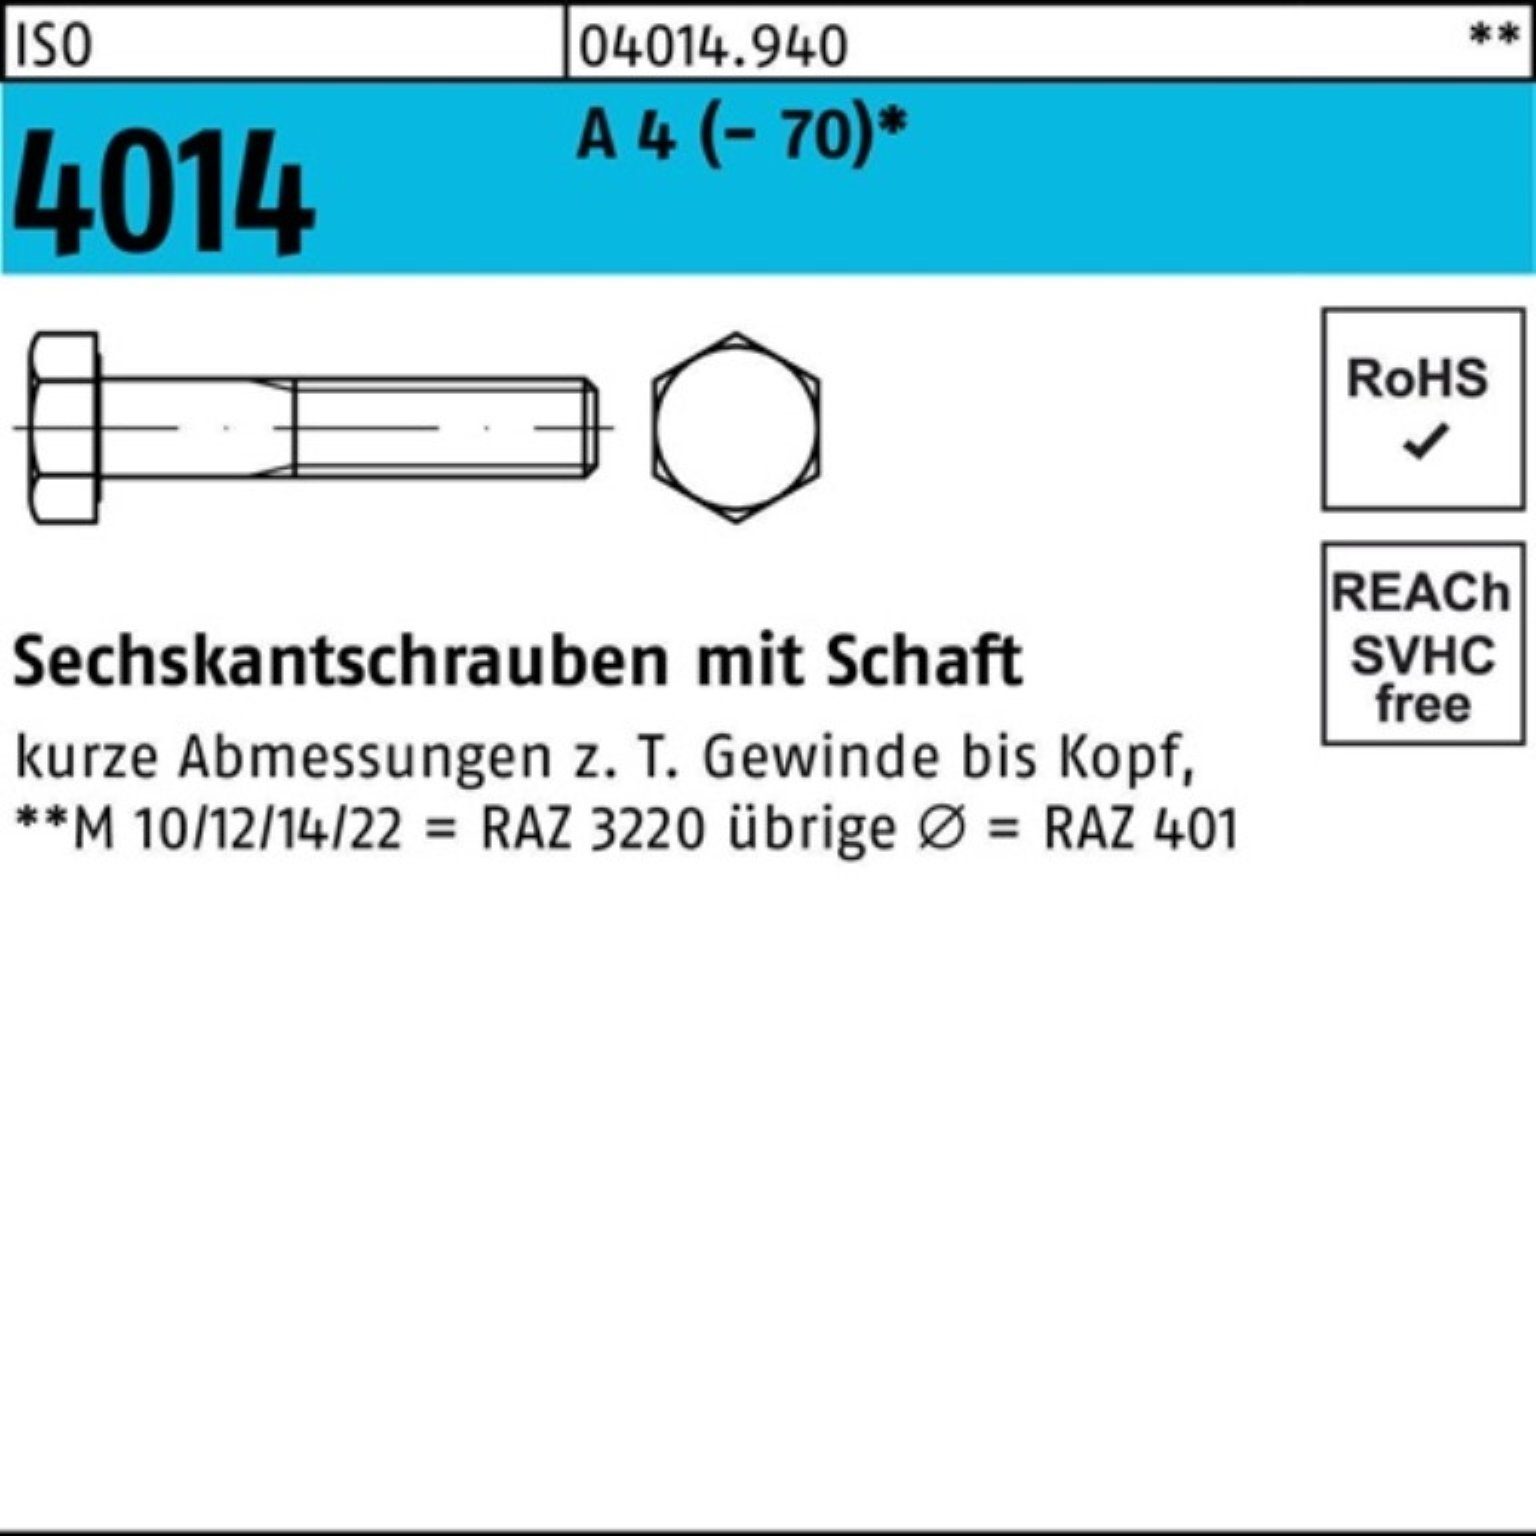 Schaft 100er Bufab A St M12x Sechskantschraube 100 Pack 4014 (70) Sechskantschraube 4 50 ISO